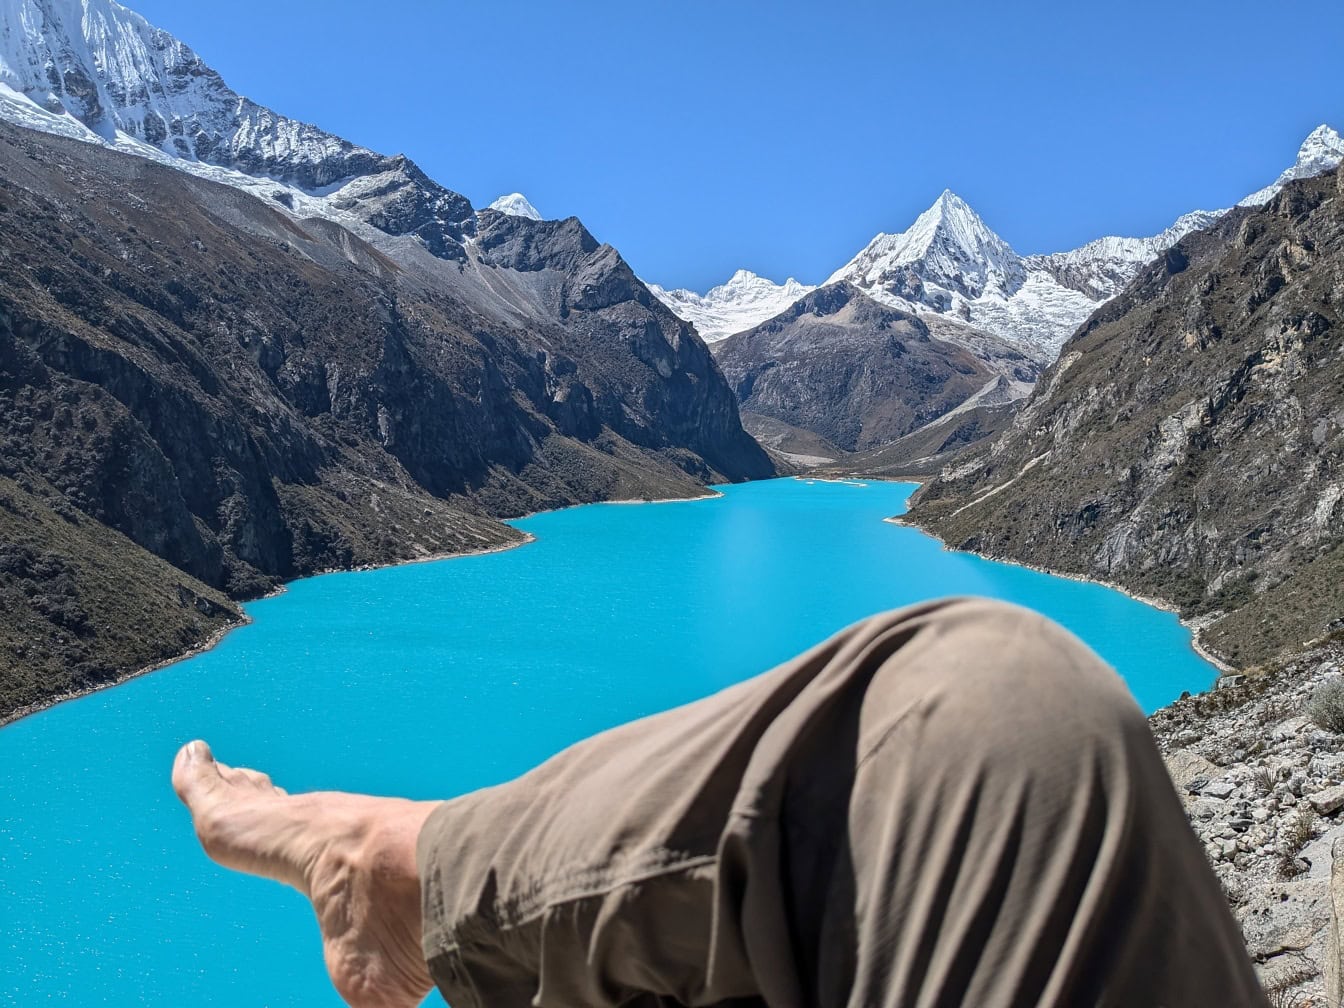 La pierna descalza de la persona en primer plano con el lago Parón en el fondo en la Cordillera Blanca en los Andes de Perú